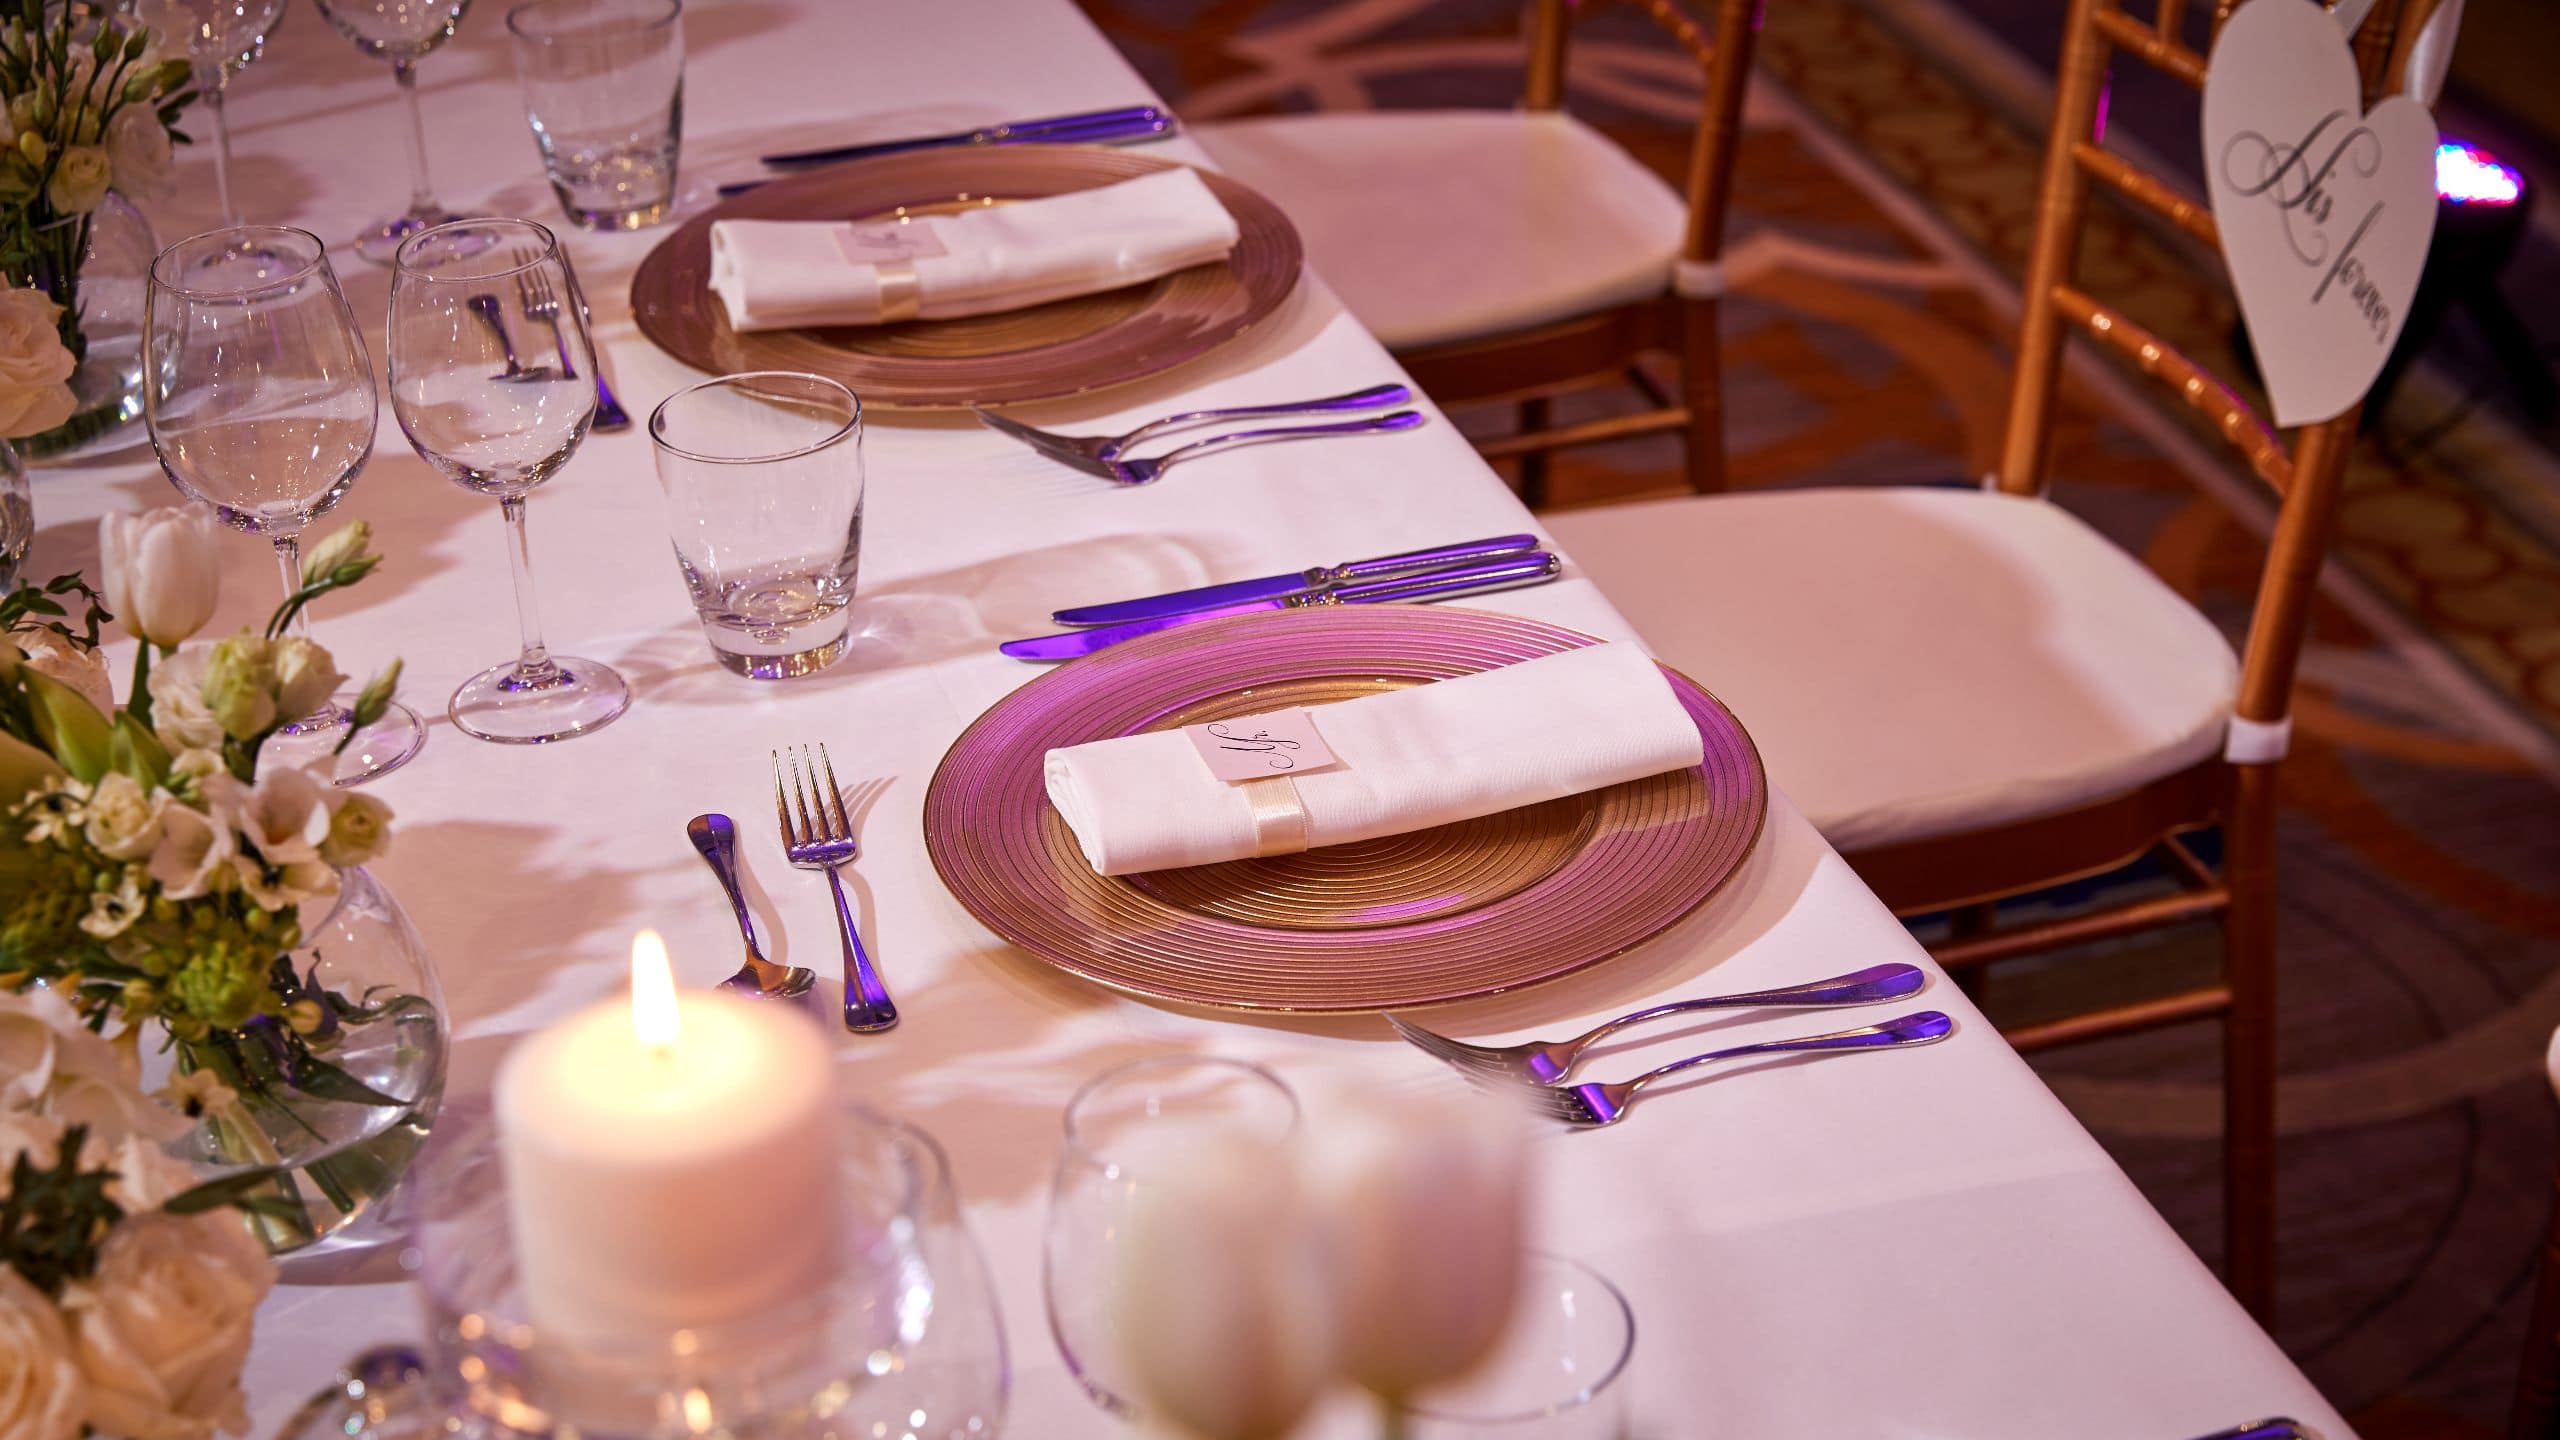 Hyatt Regency Belgrade Crystal Ballroom Wedding Table